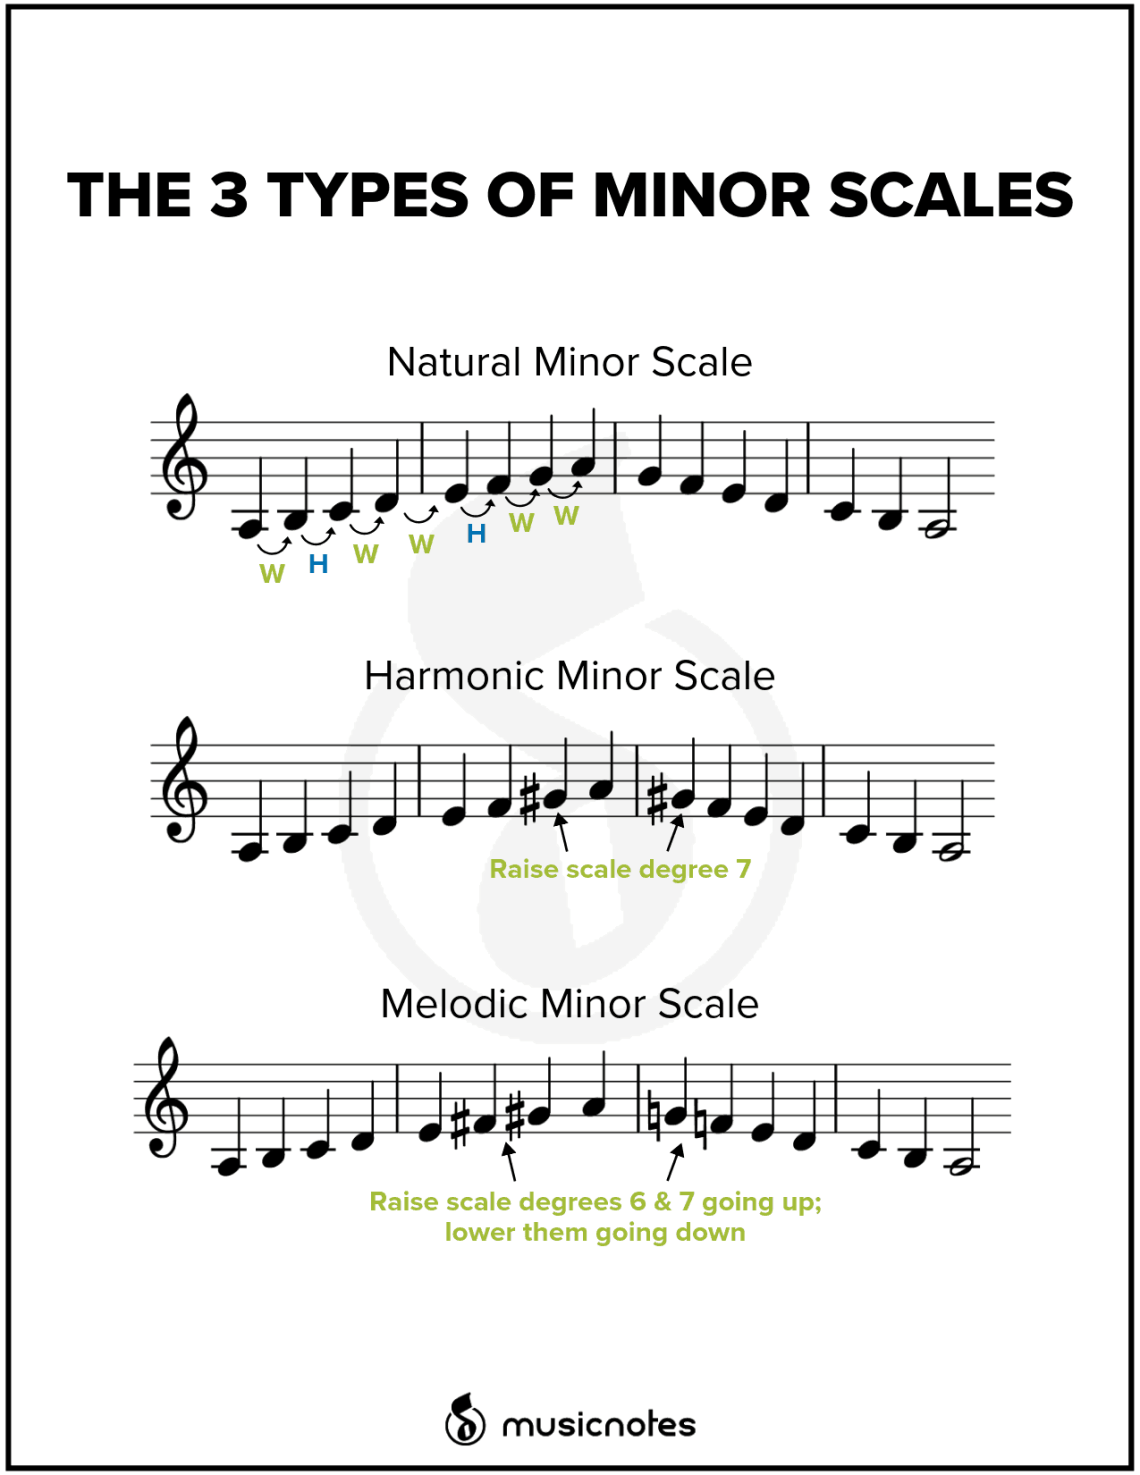 שלושה סוגי מינור במוזיקה